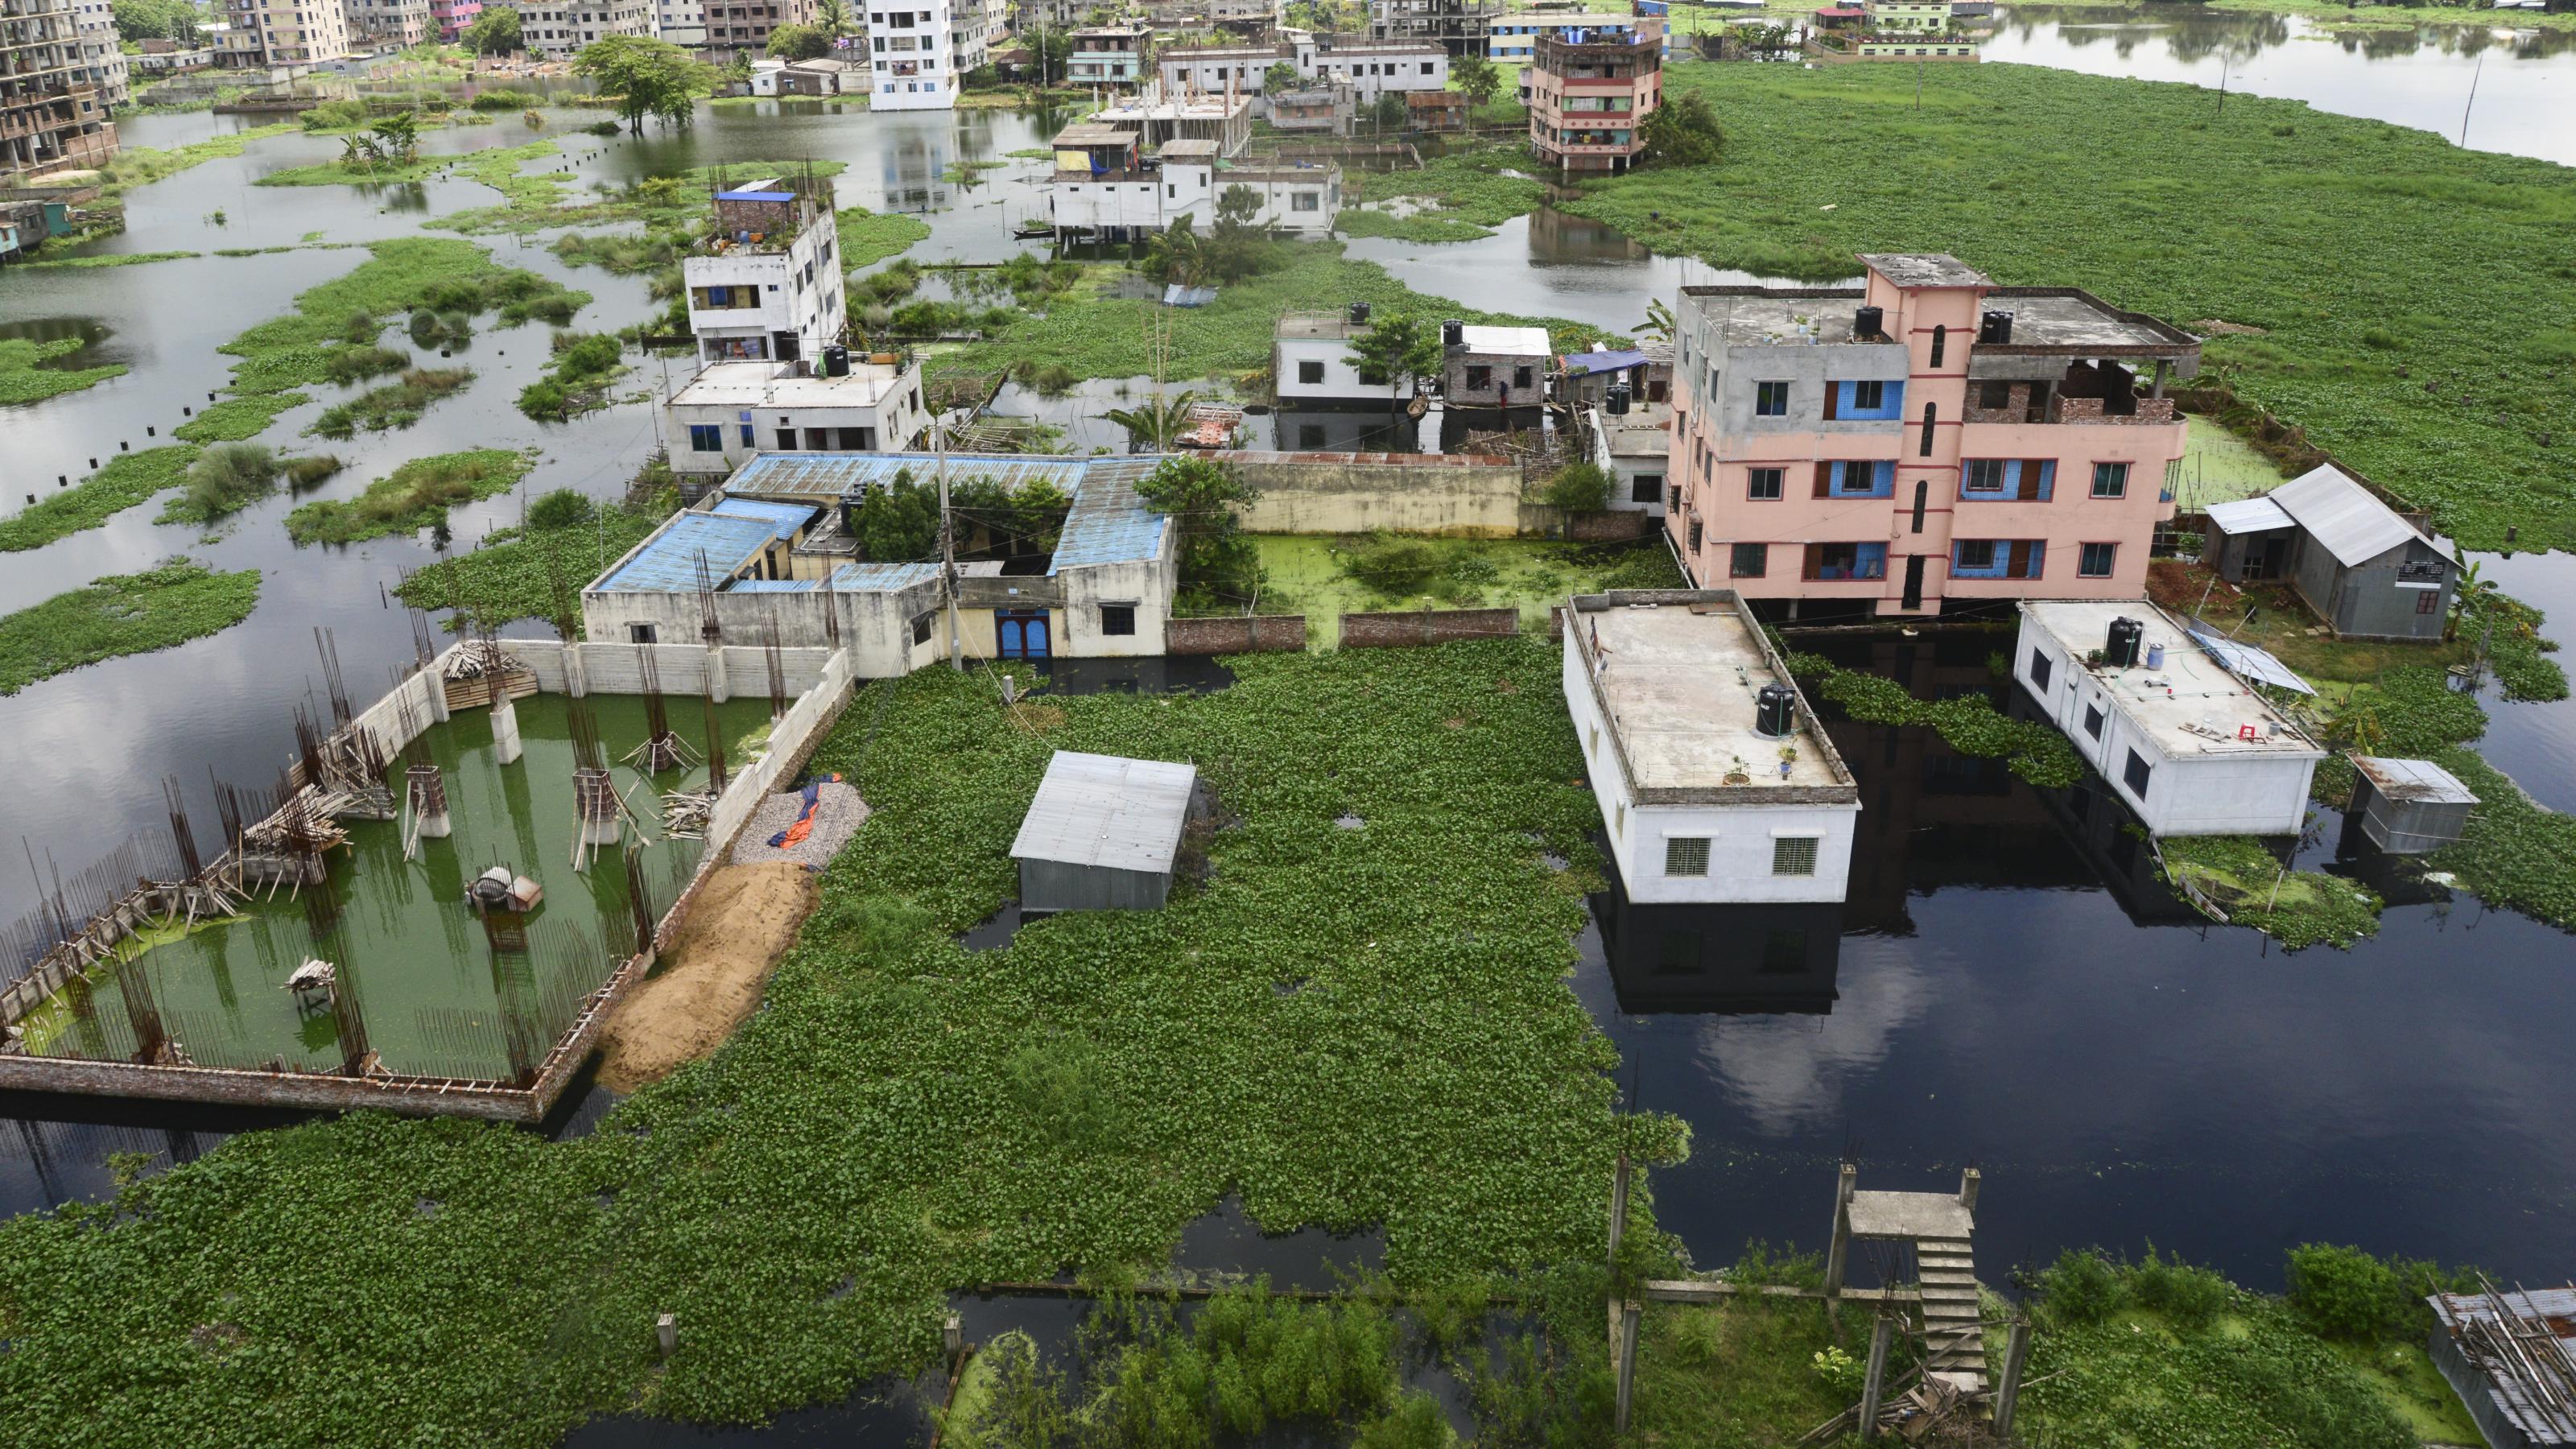 Häuser in Dhaka, Bangladesch, umgeben von grauem Wasser